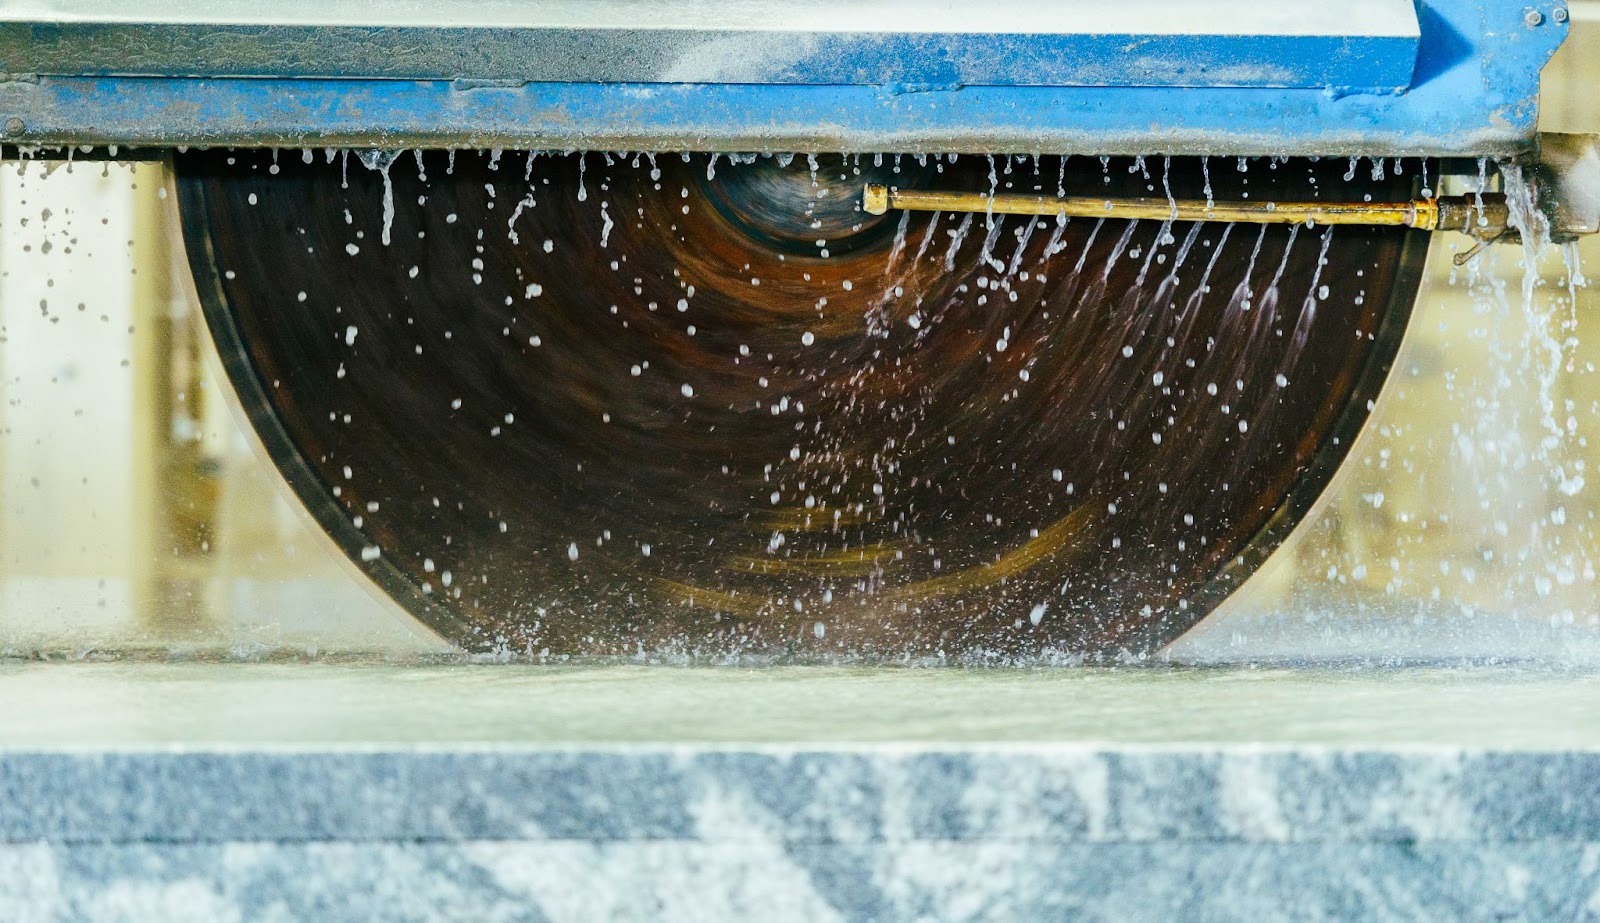 Fabrication photo of saw cutting stone